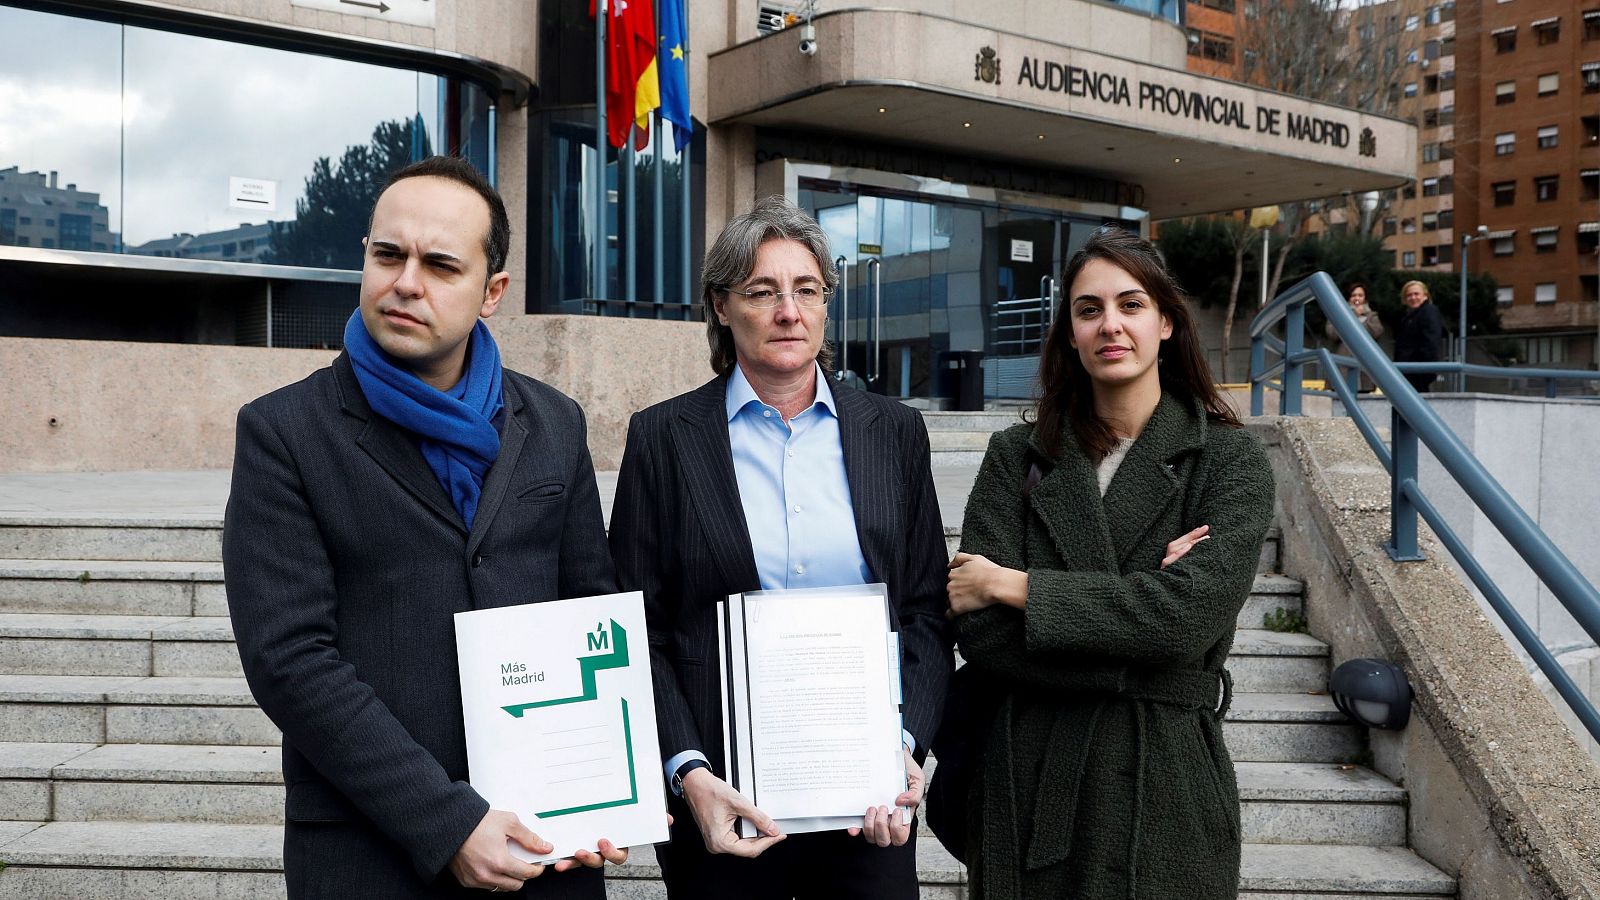 Más Madrid denuncia a Monasterio ante la Fiscalía por presunta falsedad documental - RTVE.es